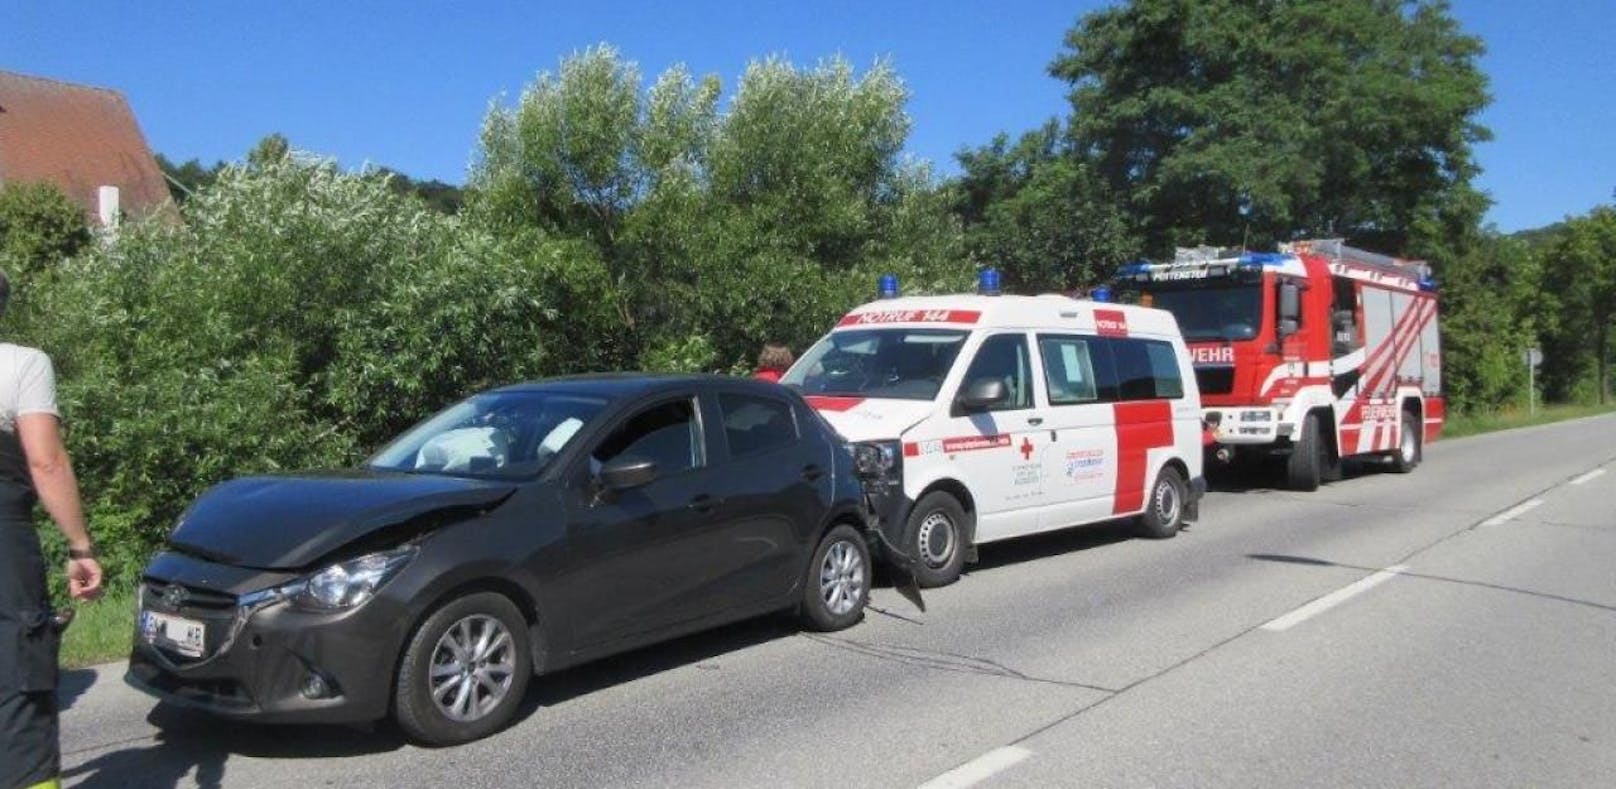 Rettungsauto in Unfall mit drei Fahrzeugen verwickelt